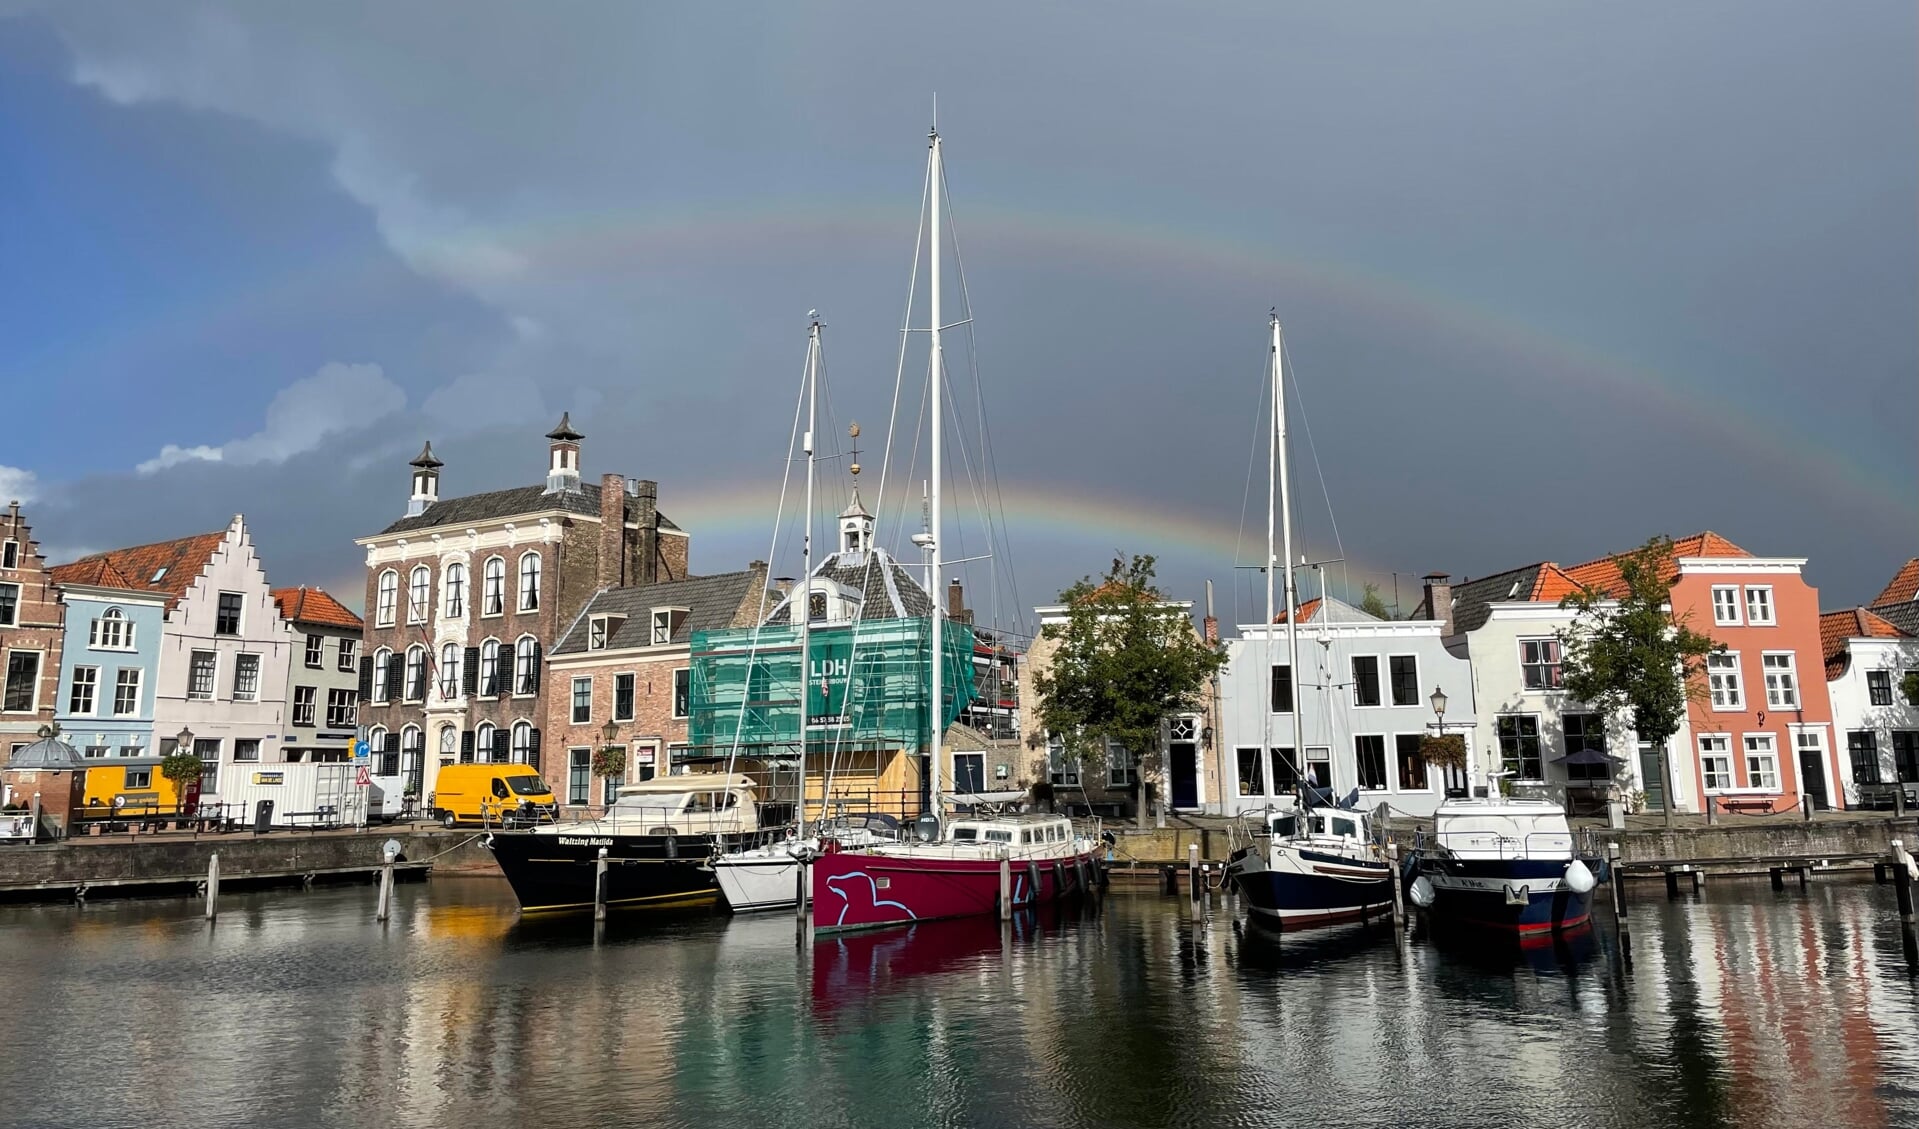 Een dubbele regenboog boven de stadshaven van Goes.